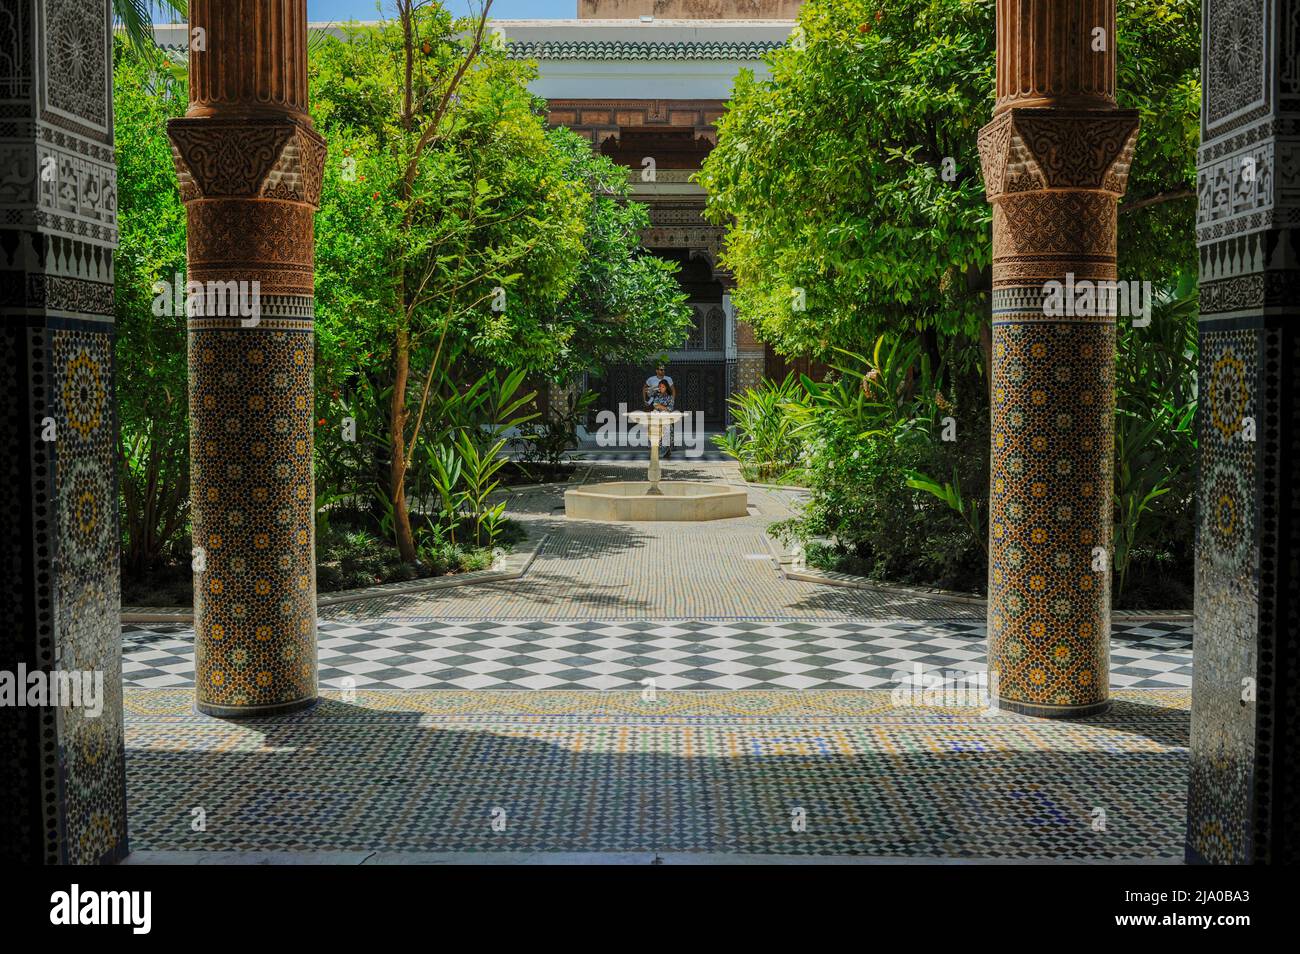 Dar El Bacha Museum der Zusammenflusse in Marrakesch. Es ist ein majestätisches Museum/Palast, der von der National Foundation of Museums verwaltet wird. Stockfoto